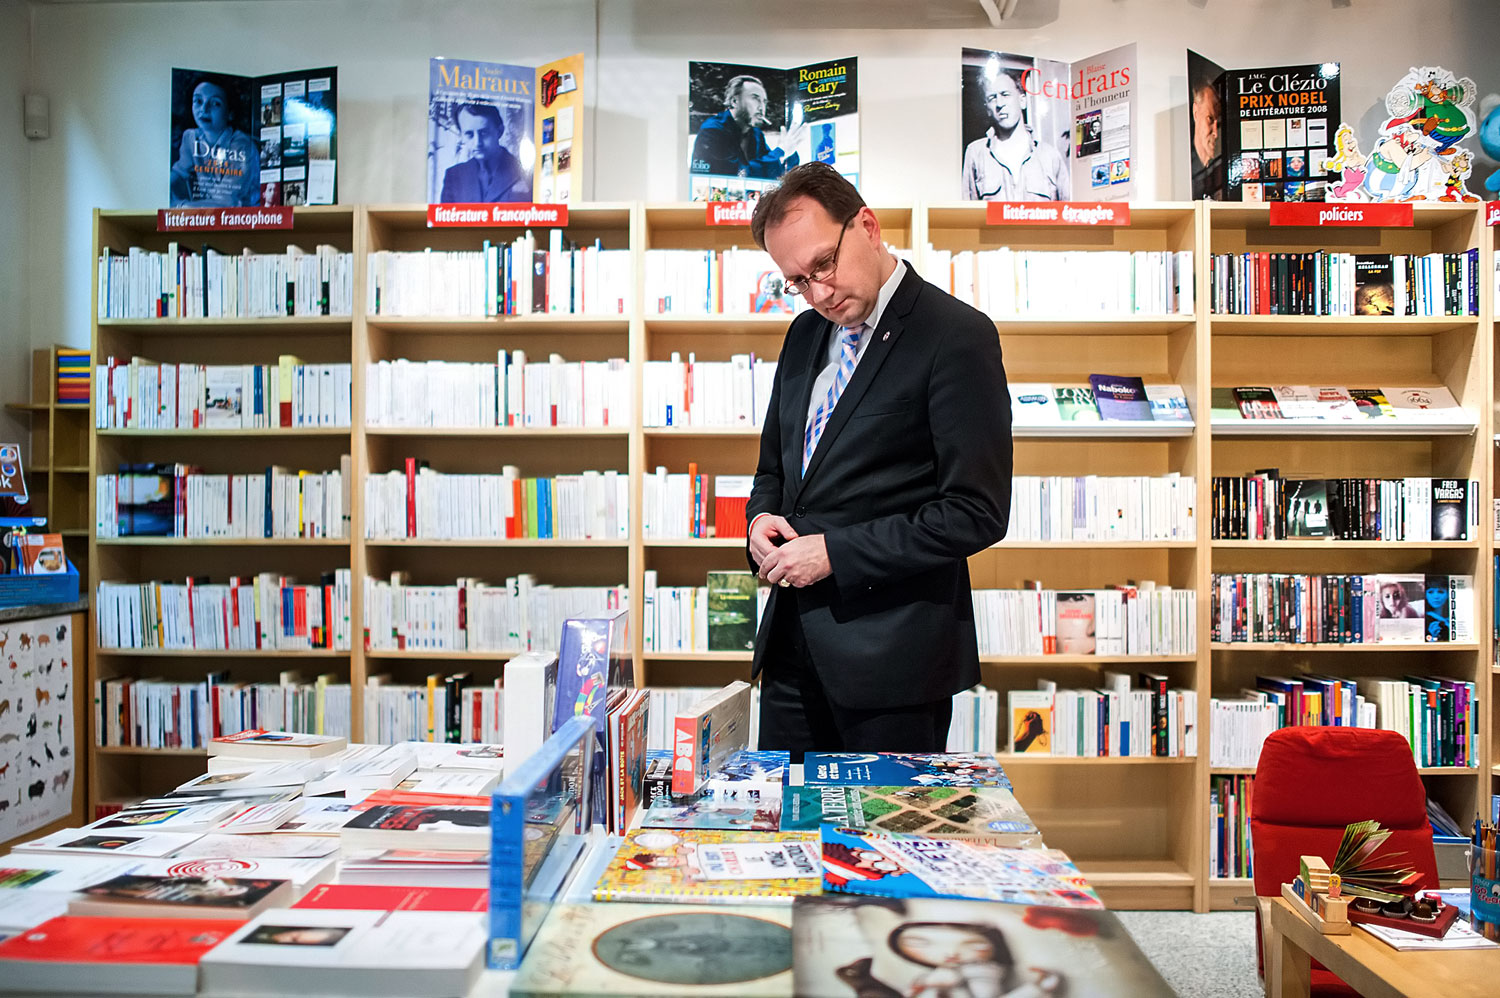 Könyvtár, ami kezdettől fogva méltó közösségi tér – Hoppál Péter a Budapesti Francia Intézet könyvtárában január 20-án